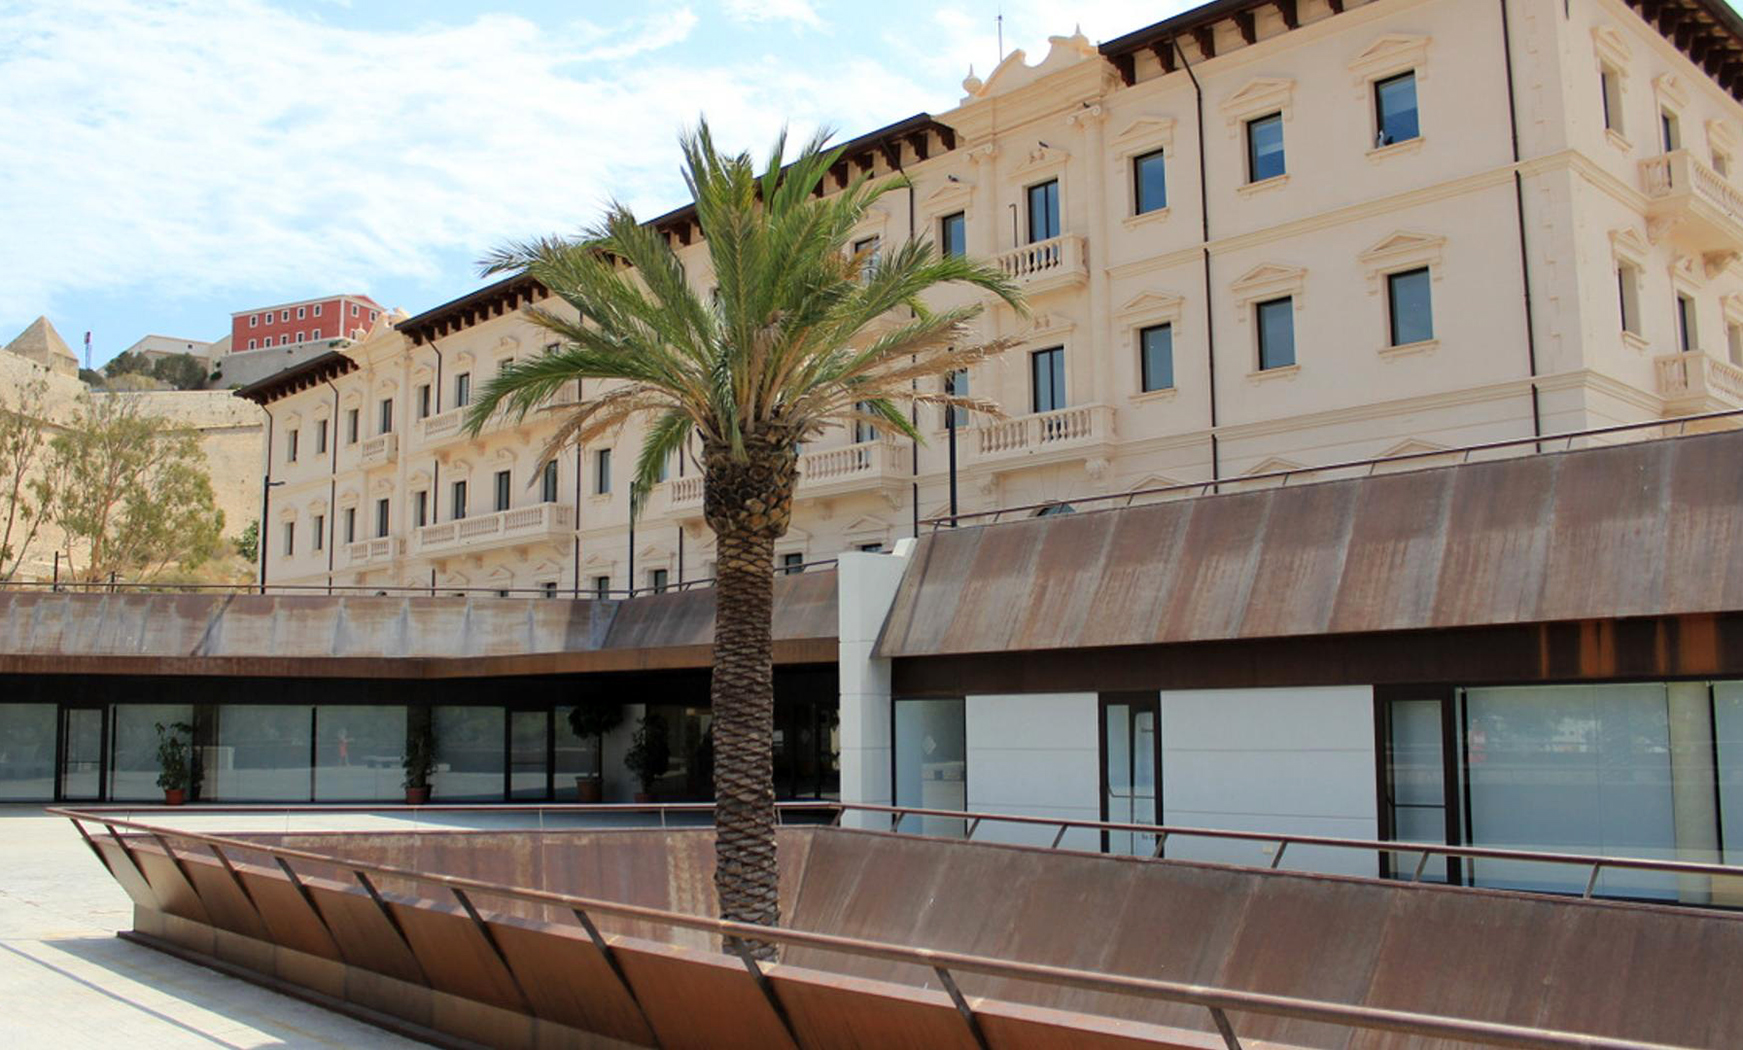 Off-campus Center of Eivissa and Formentera (UIB)